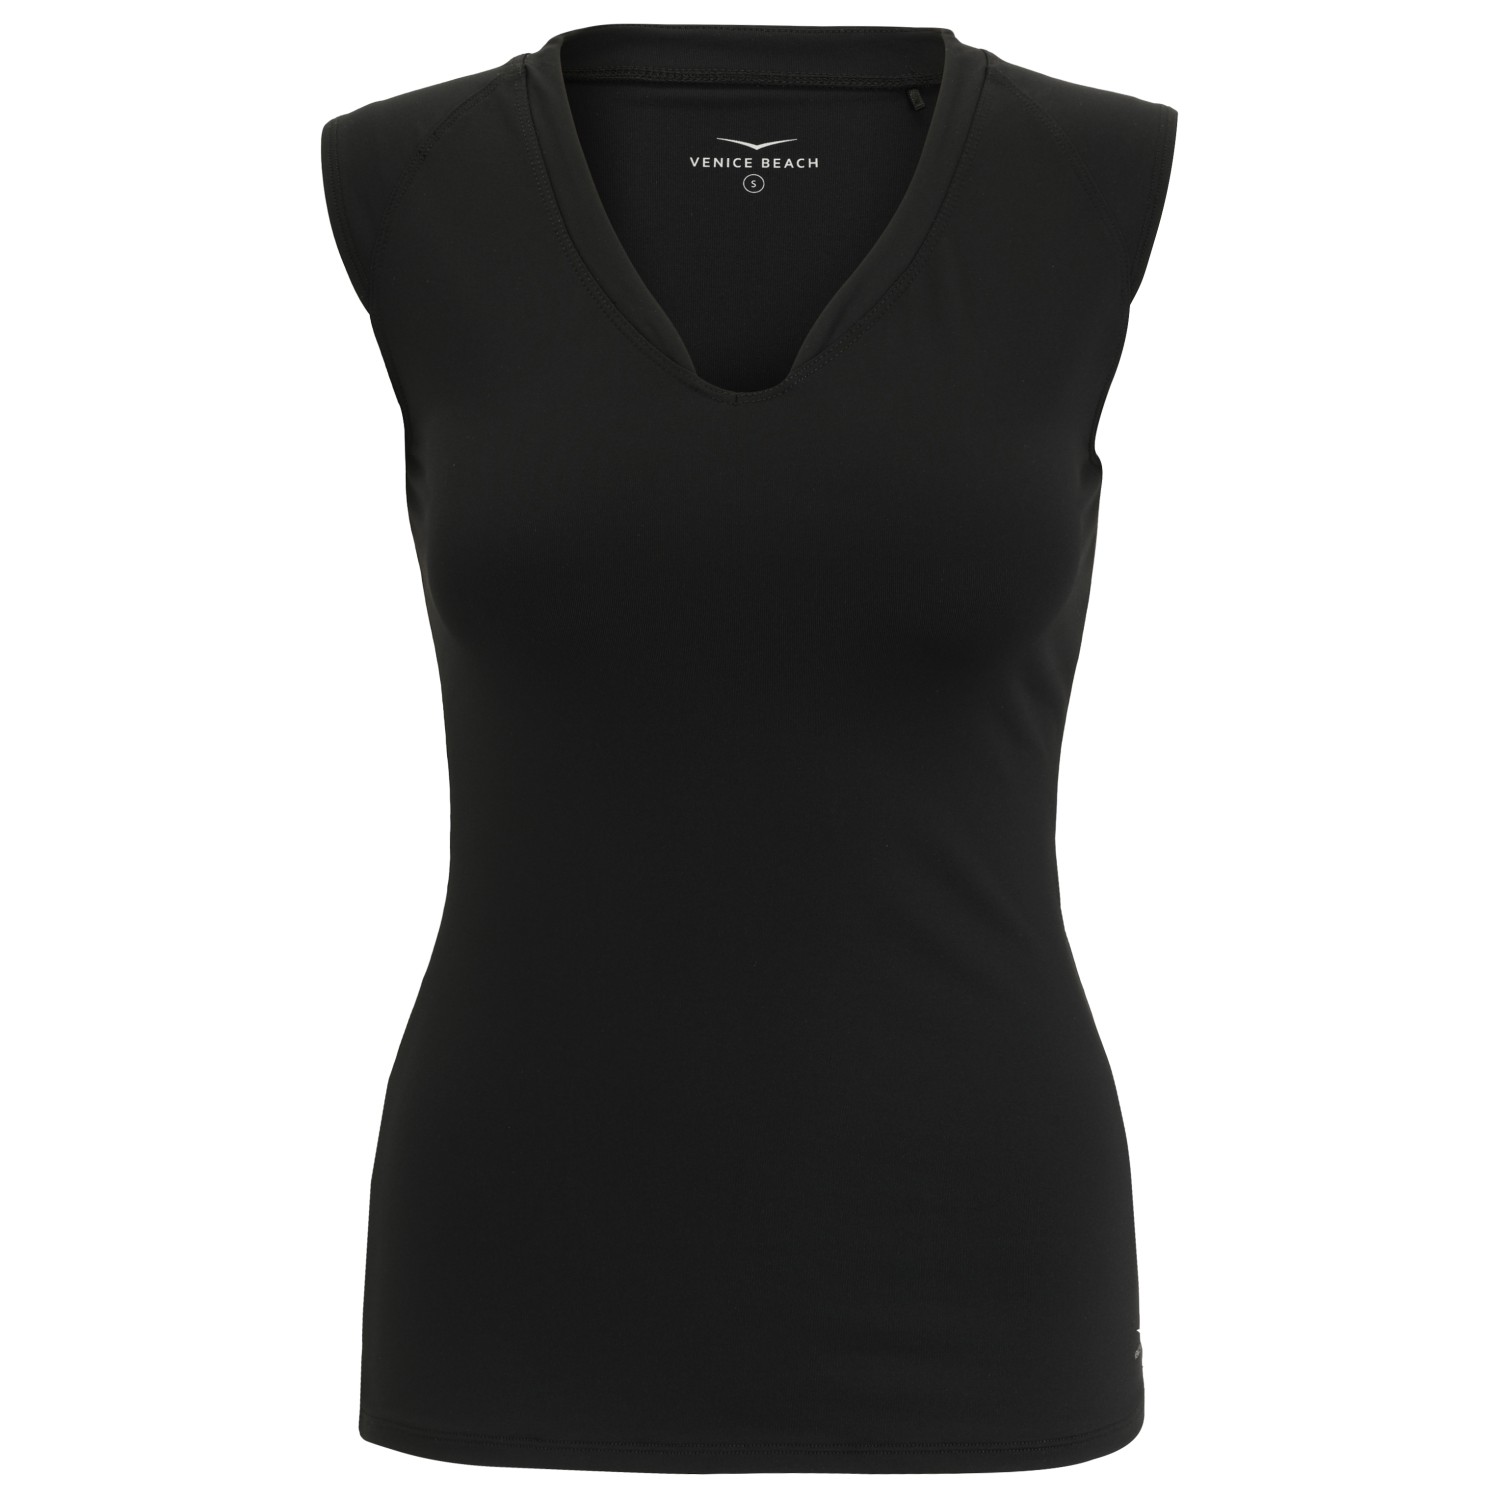 Функциональная рубашка Venice Beach Women's Eleam Drytivity T Shirt, черный